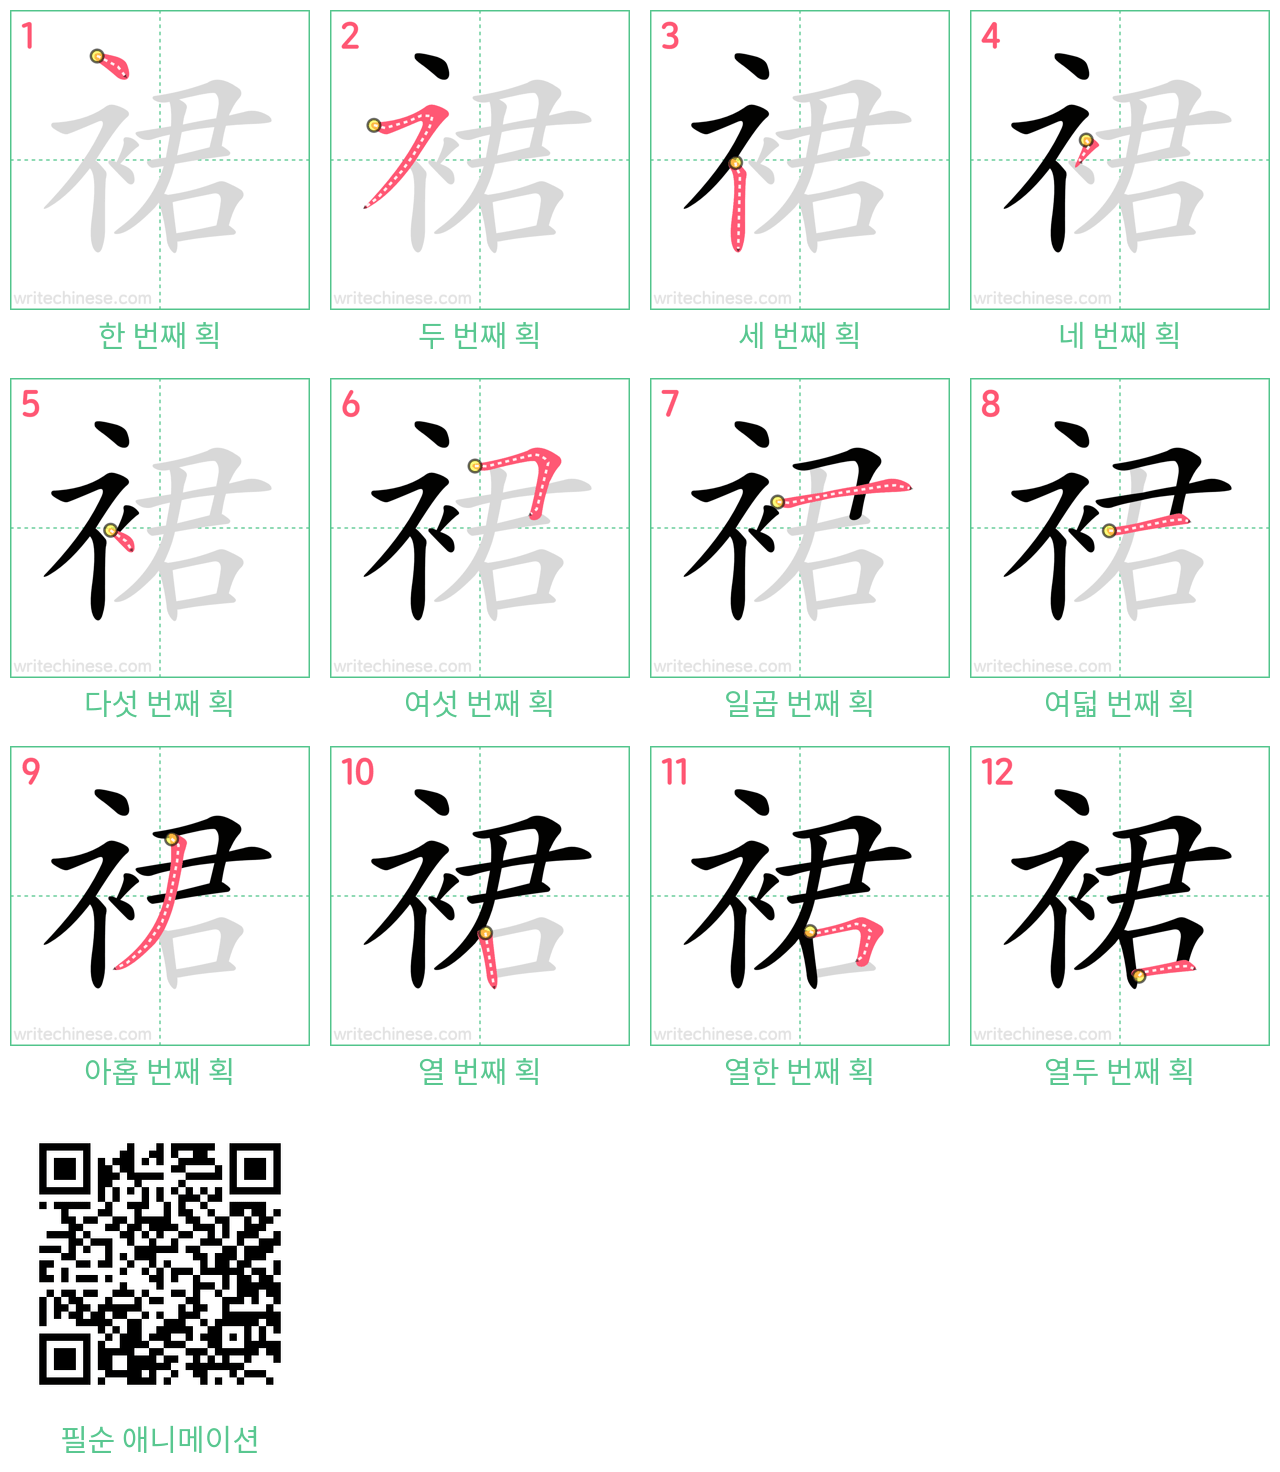 裙 step-by-step stroke order diagrams